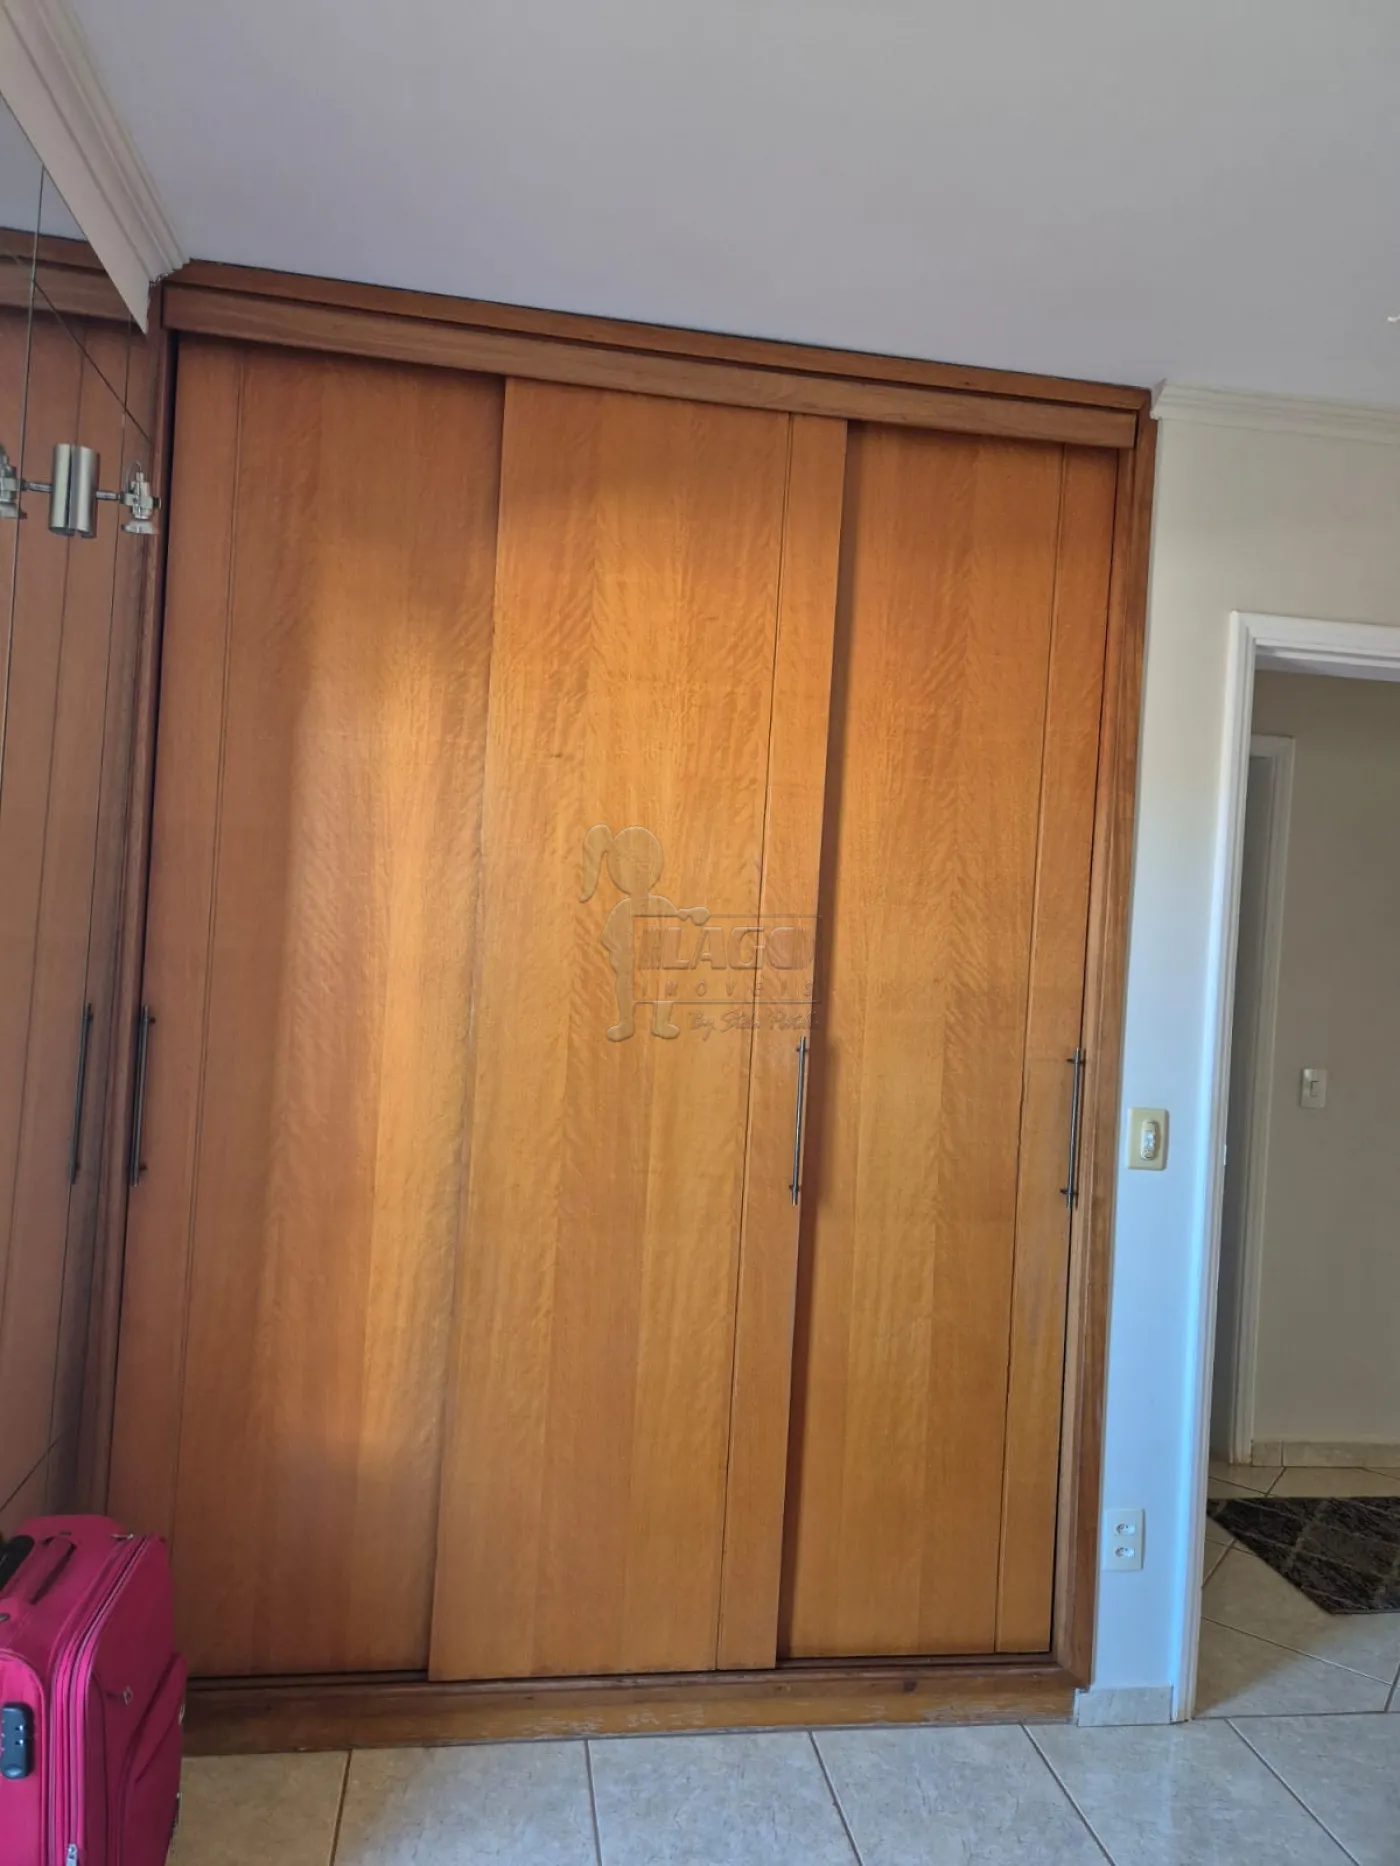 Comprar Apartamento / Padrão em Ribeirão Preto R$ 380.000,00 - Foto 9